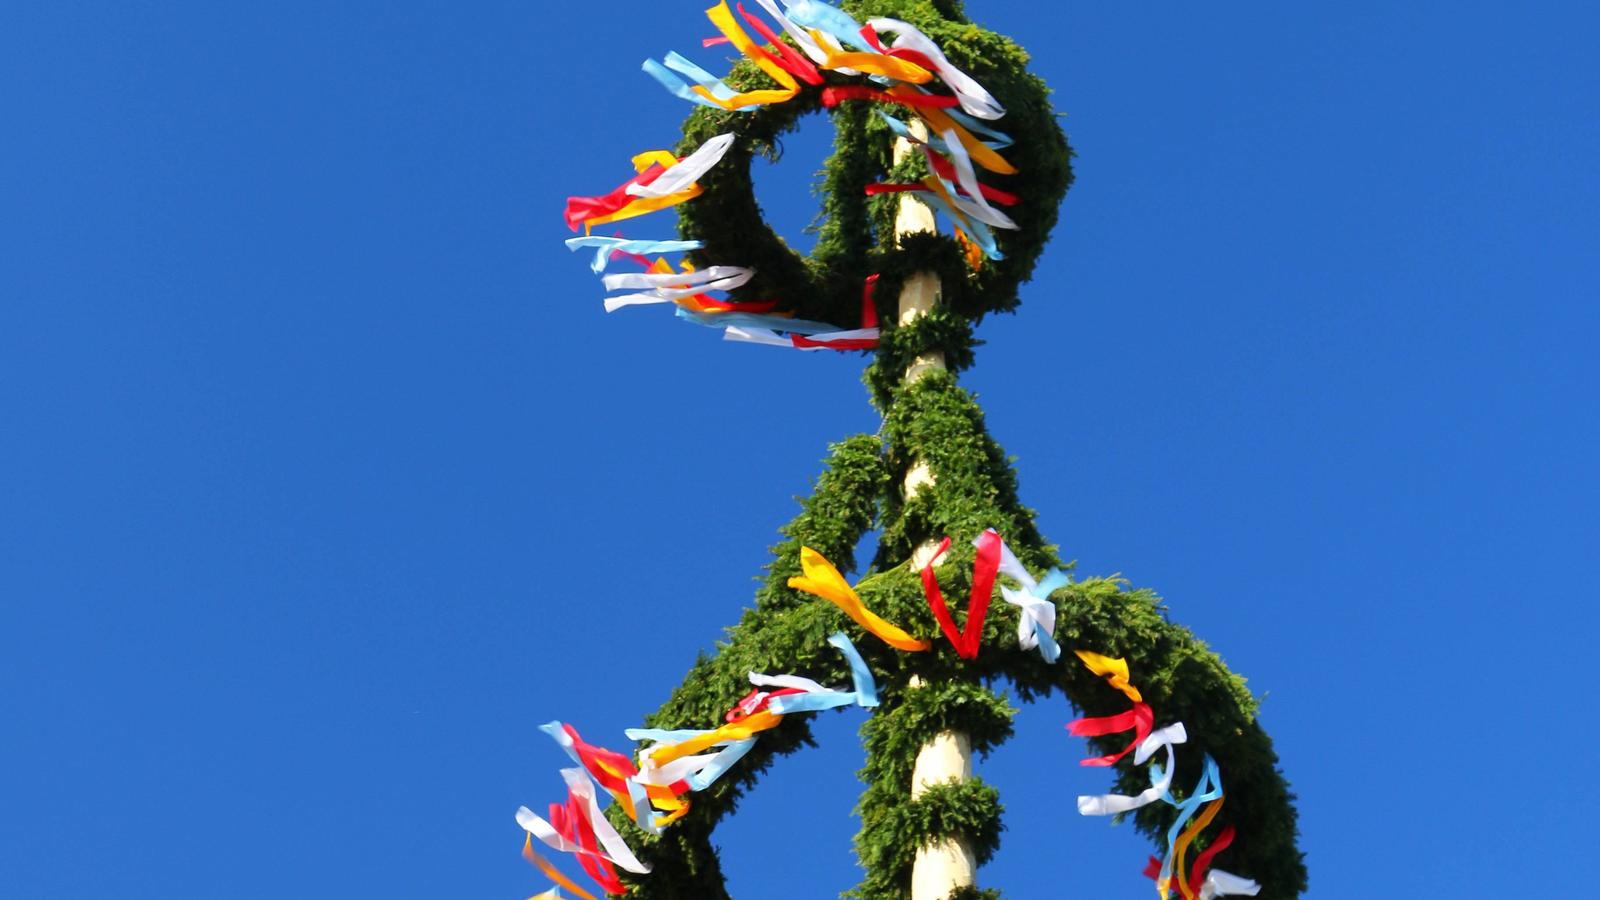 (Symbolbild) In einigen Orten Deutschland gehört das Aufstellen eines Maibaums zum 1. Mai zur Tradition.